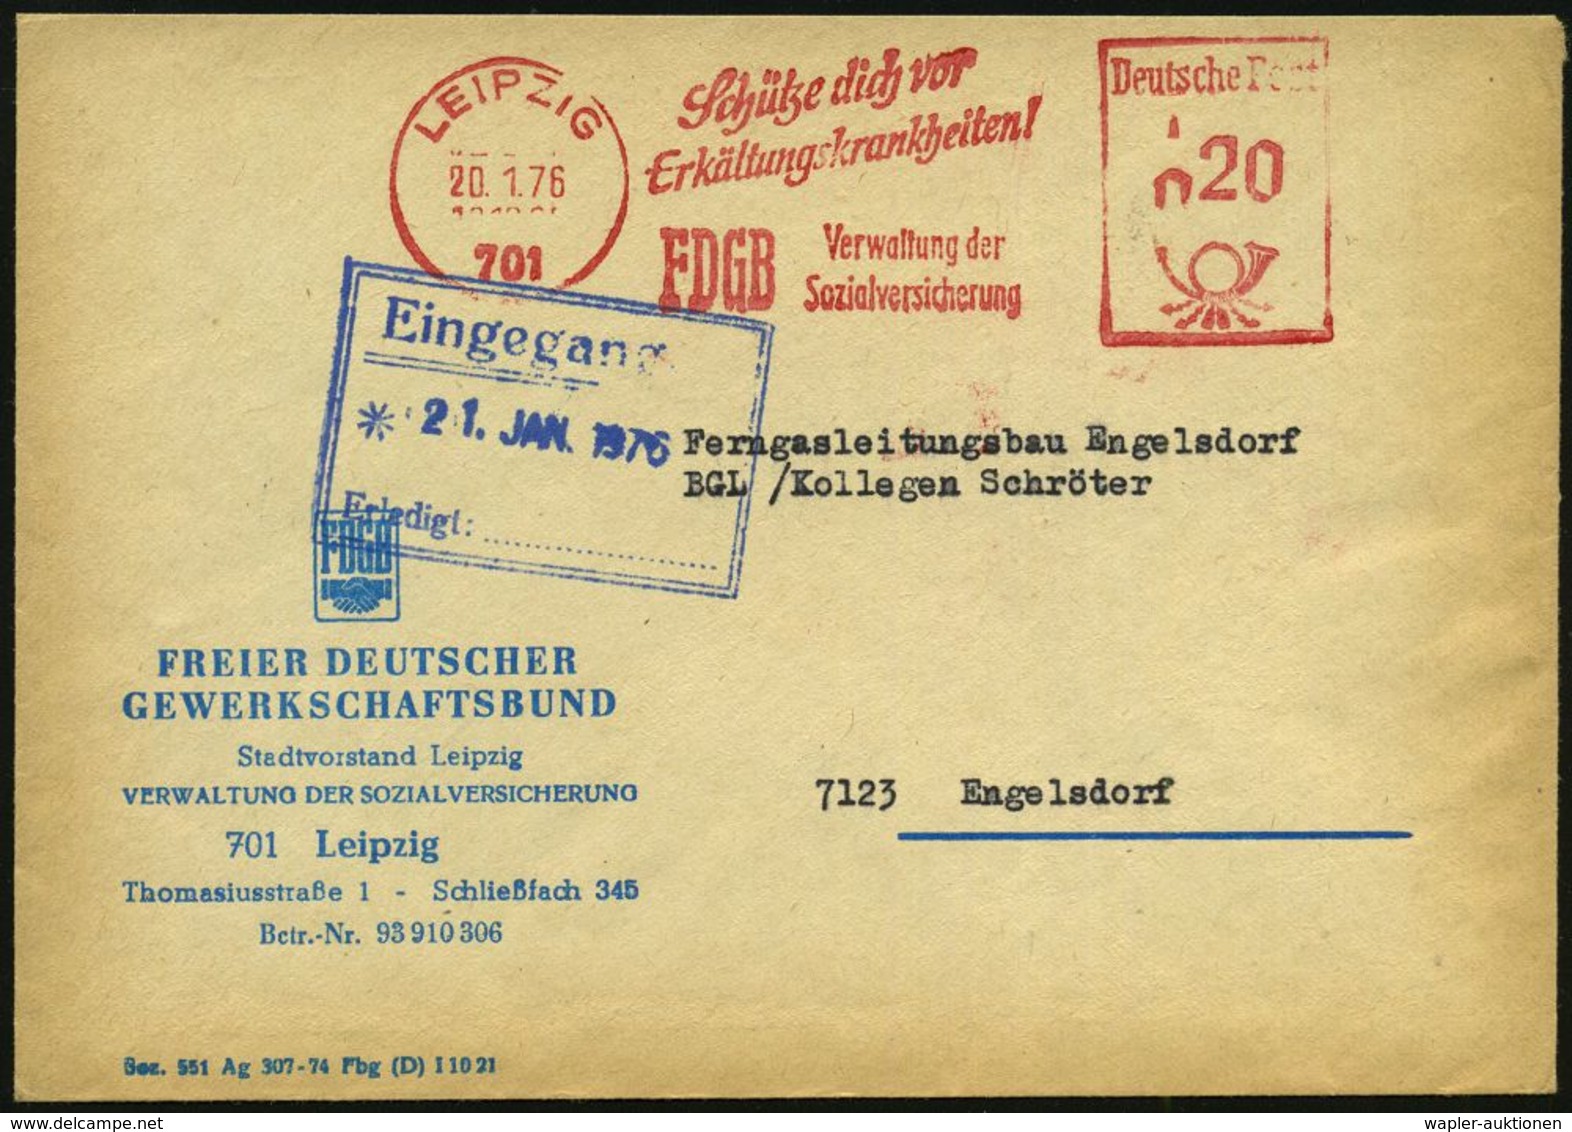 KRANKHEITEN : 701 LEIPZIG/ Schütze Dich Vor/ Erkältungskrankheiten!/ FDGB.. 1976 (20.1.) AFS Mit PLZ Auf Dienst-Bf.: FDG - Maladies